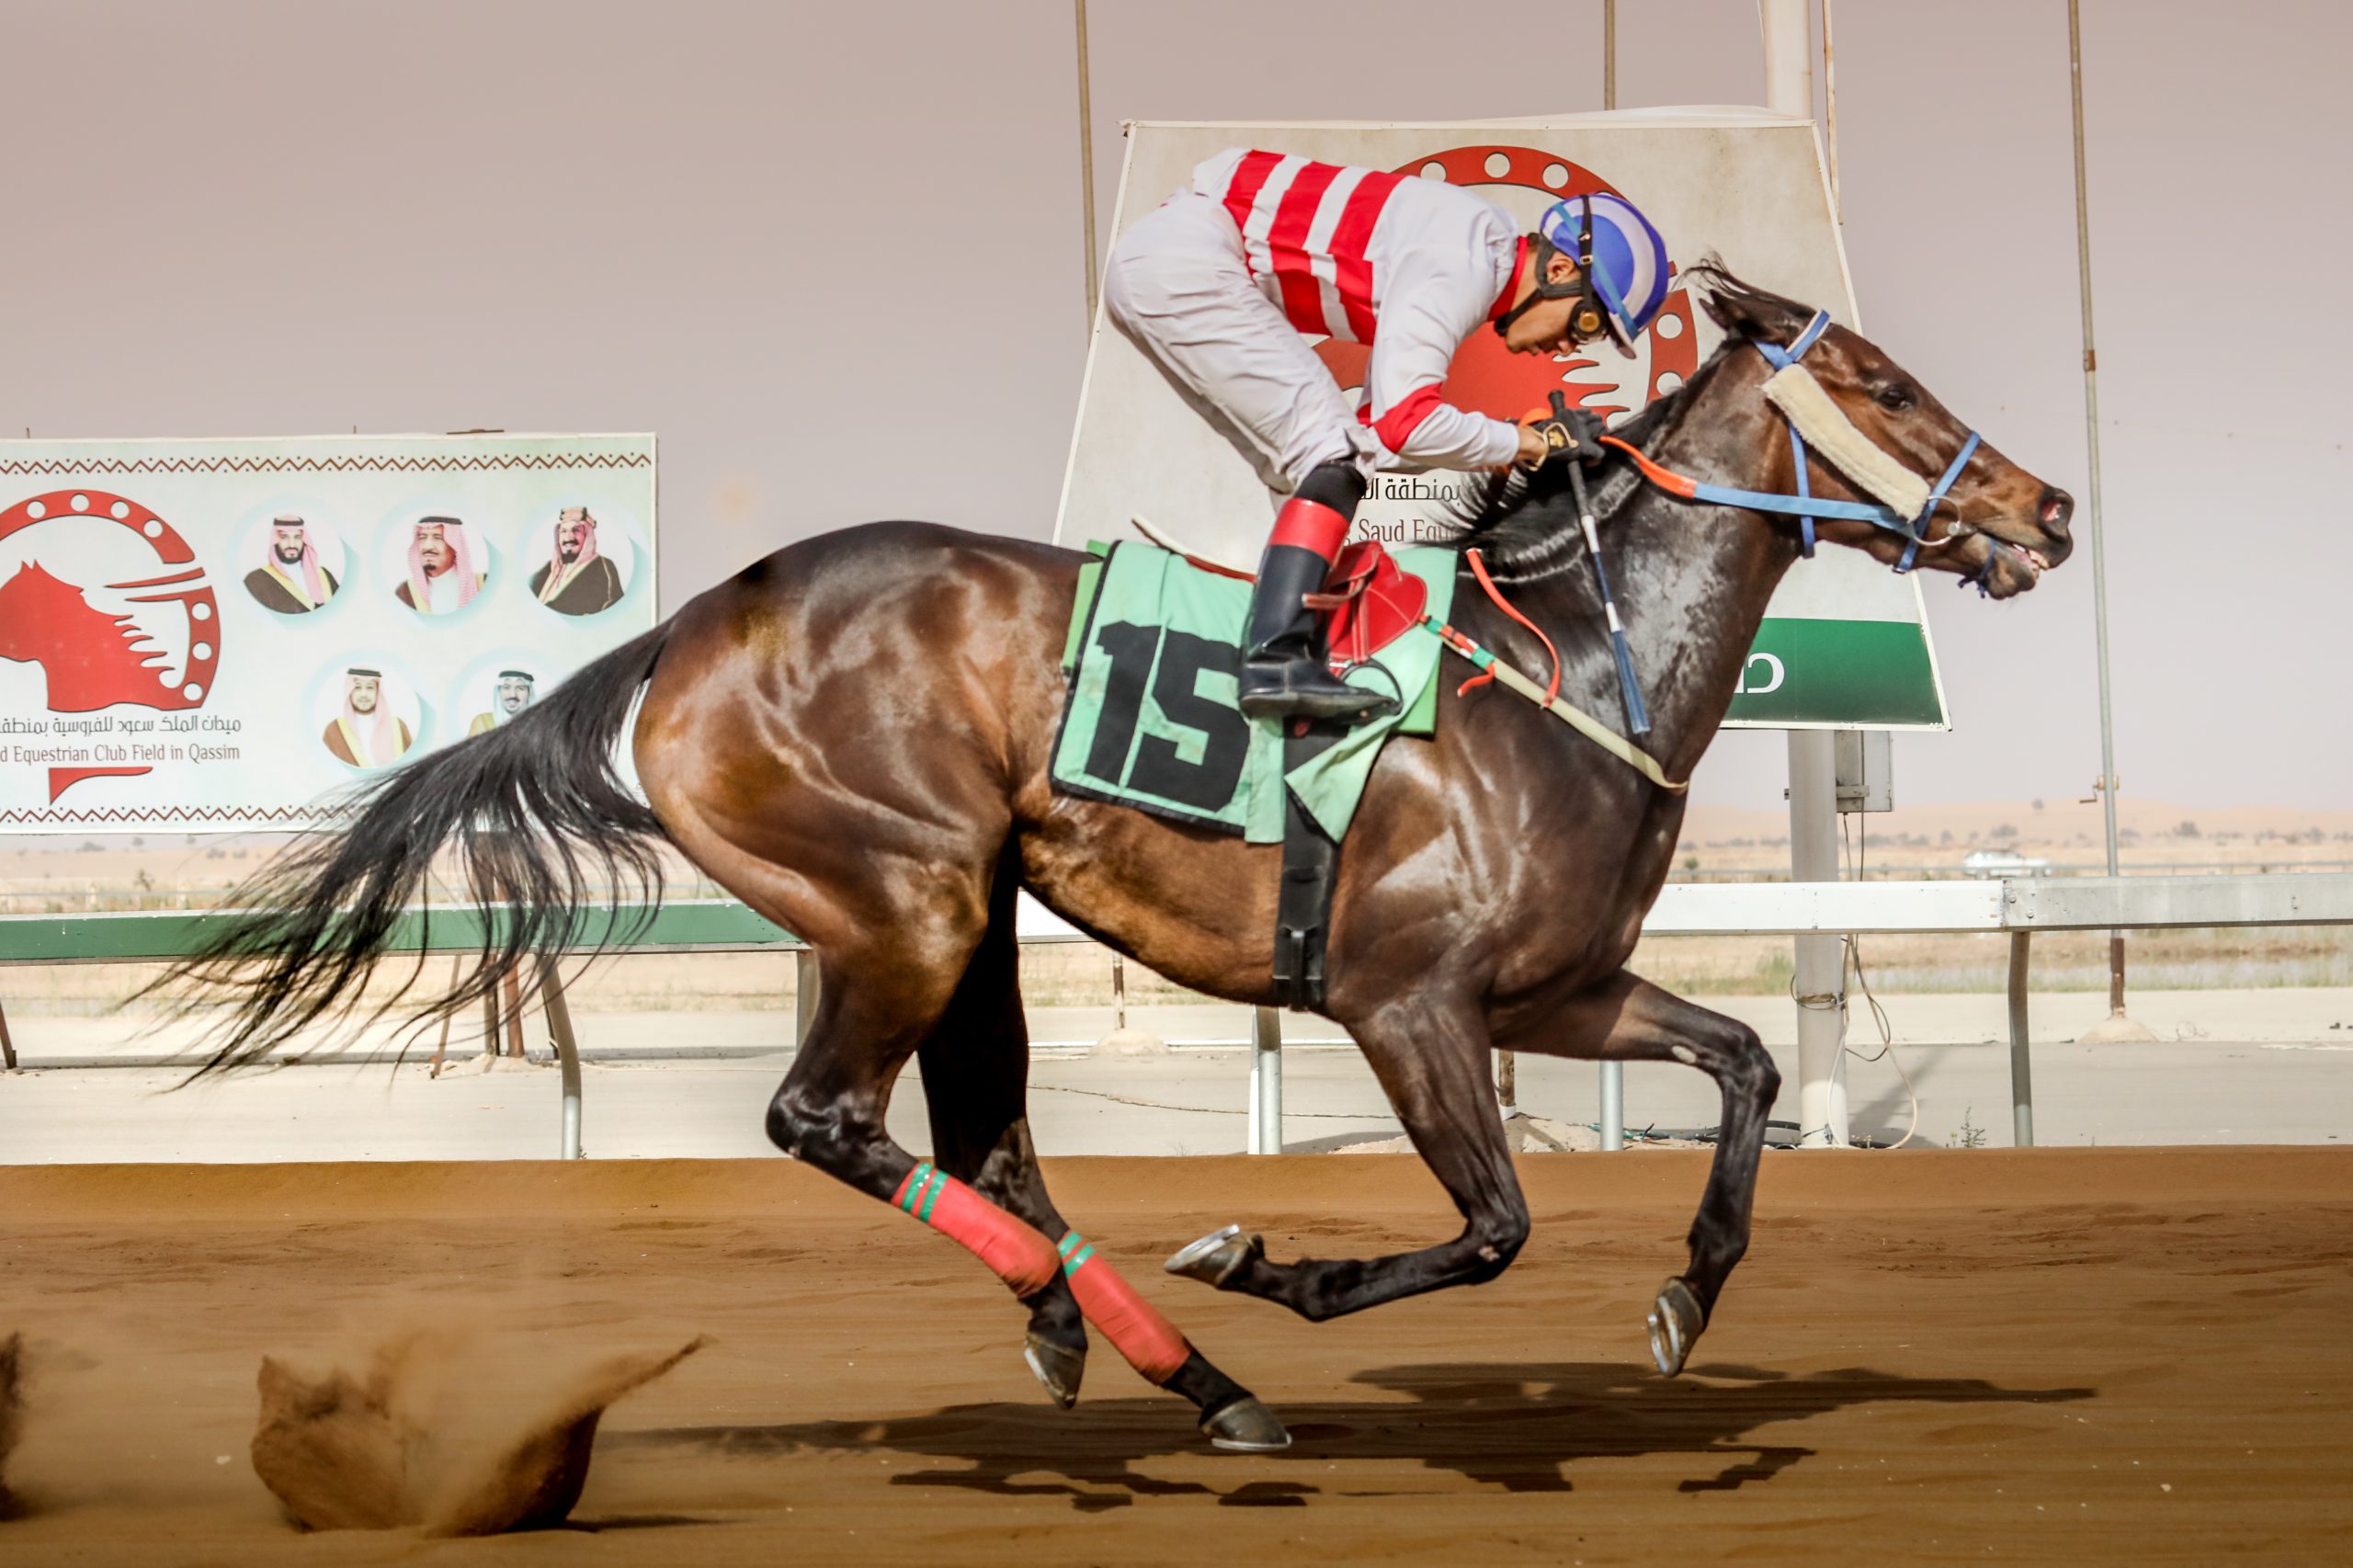 Horse Race at King Saud Equestrian Club, Al Qassim Buraidah